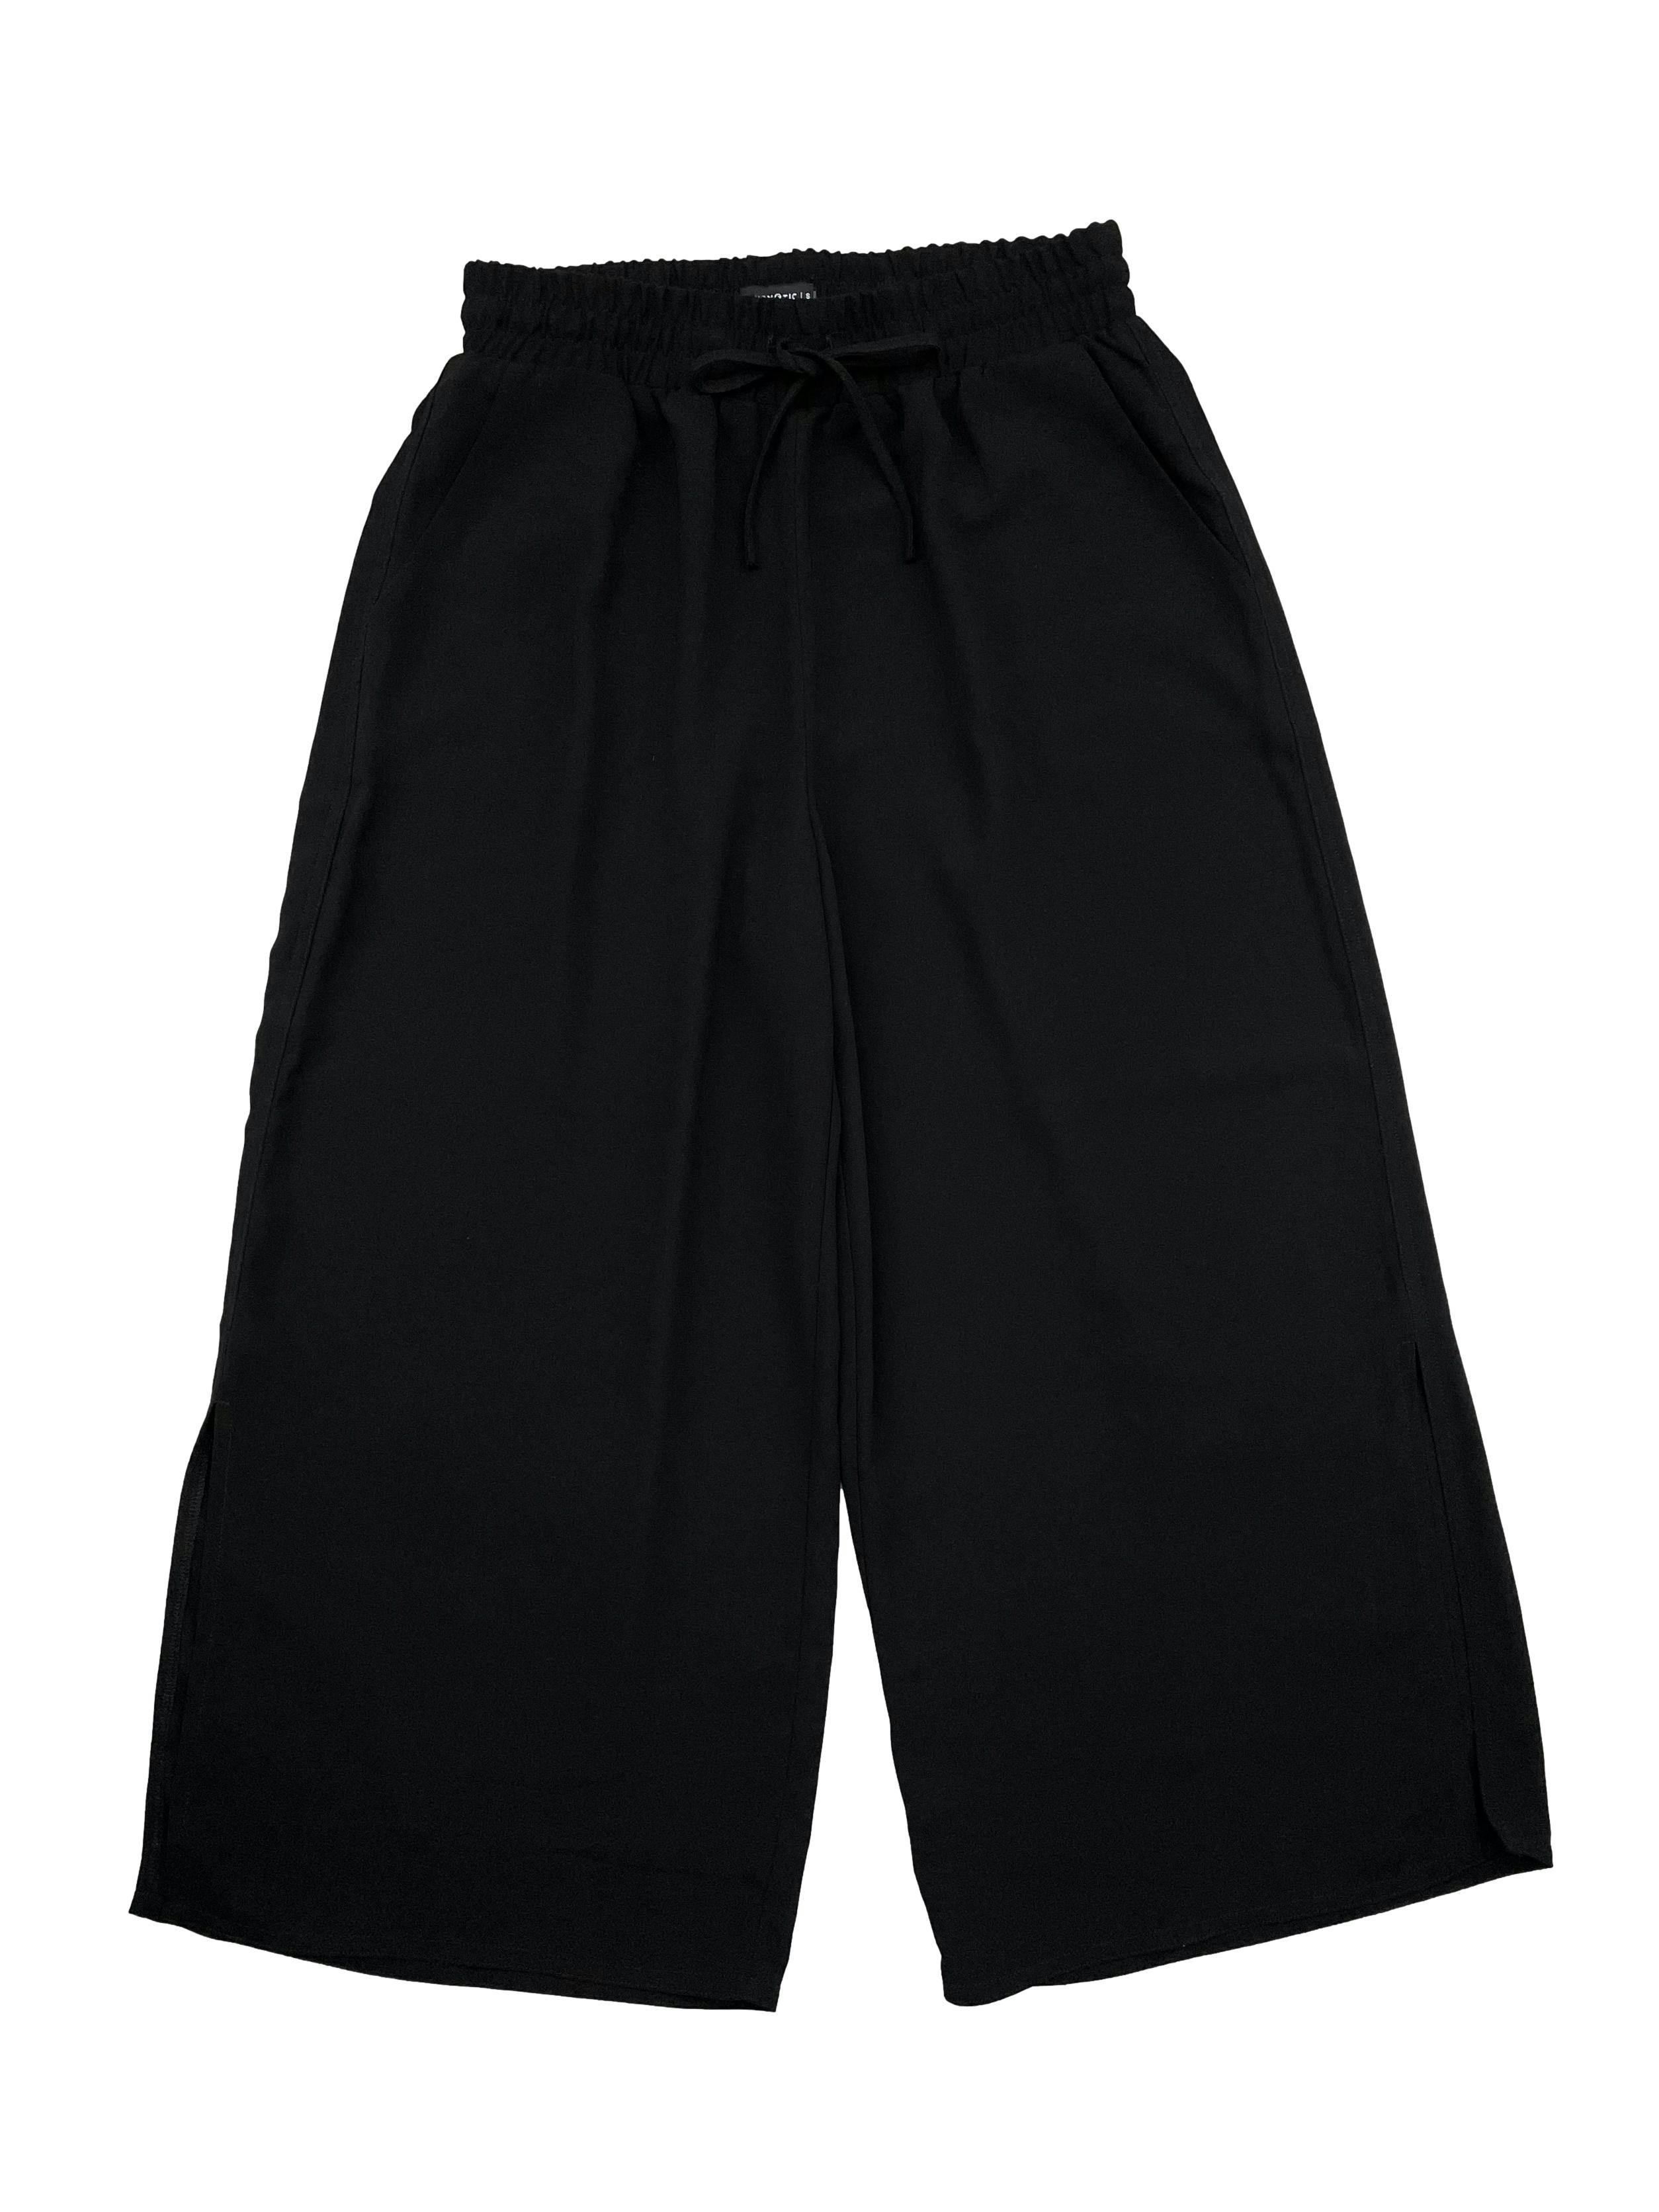 Culotte negro Hypnotic con elástico y cordones en cintura, bolsillos y aberturas laterales. Cintura 70cm, Largo 88cm.